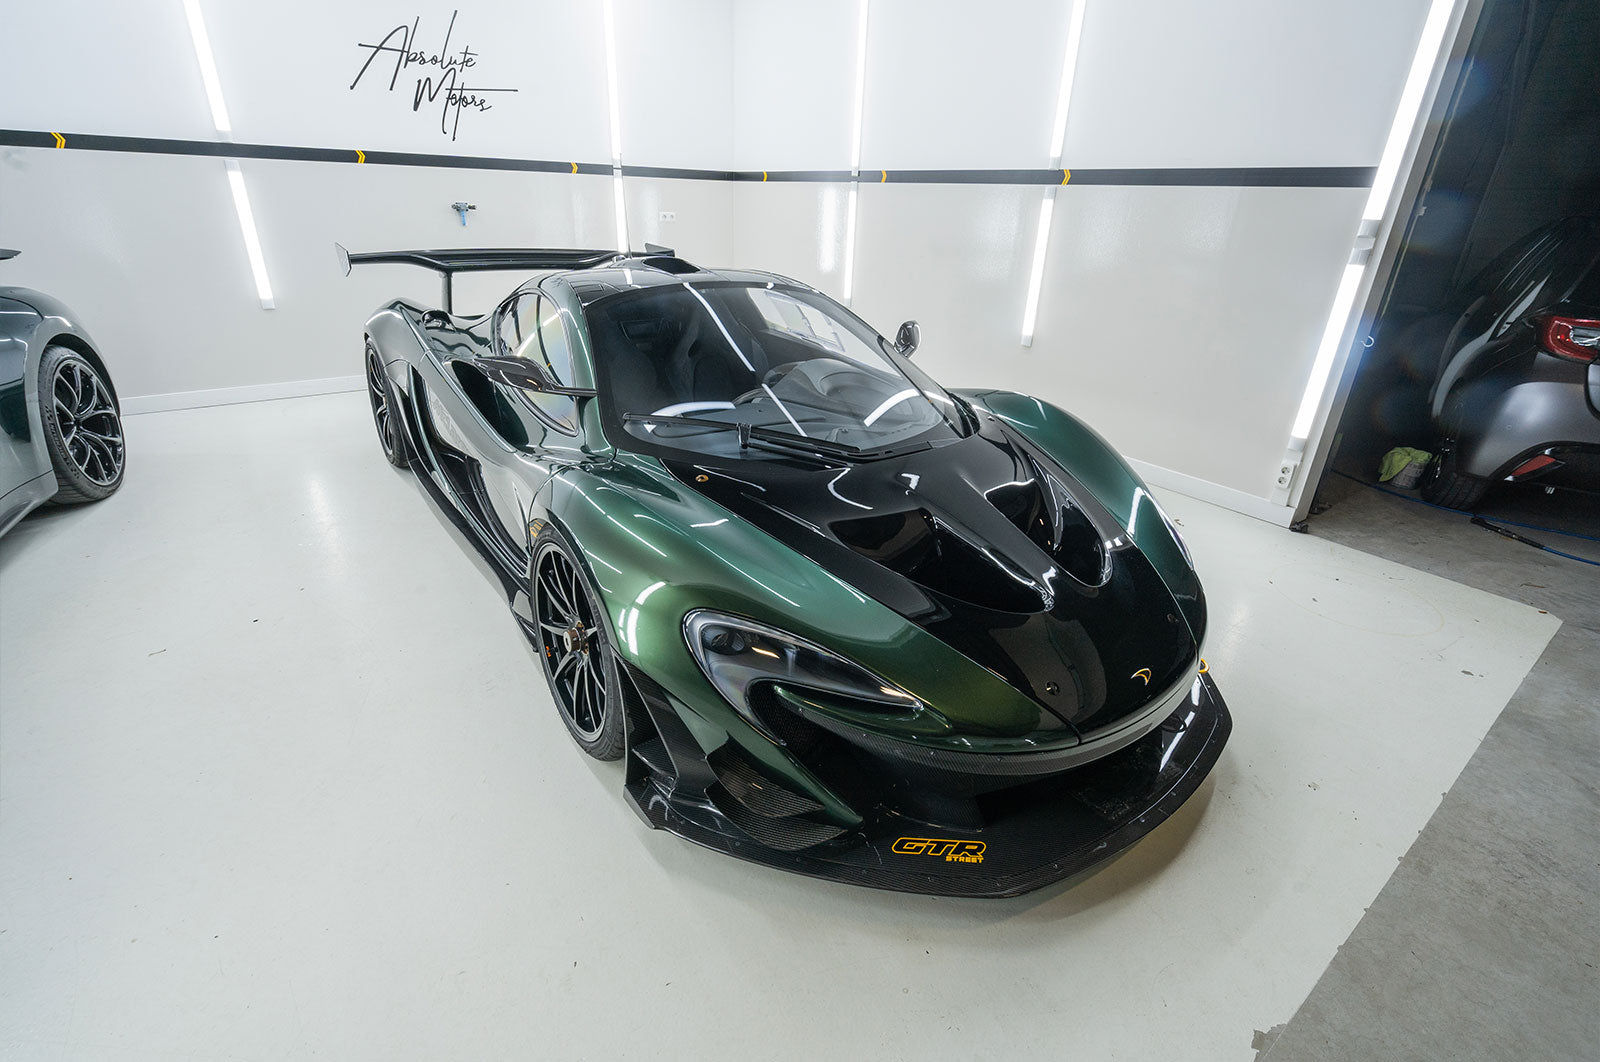 McLaren P1 - Supergloss Metallic Midnight Green